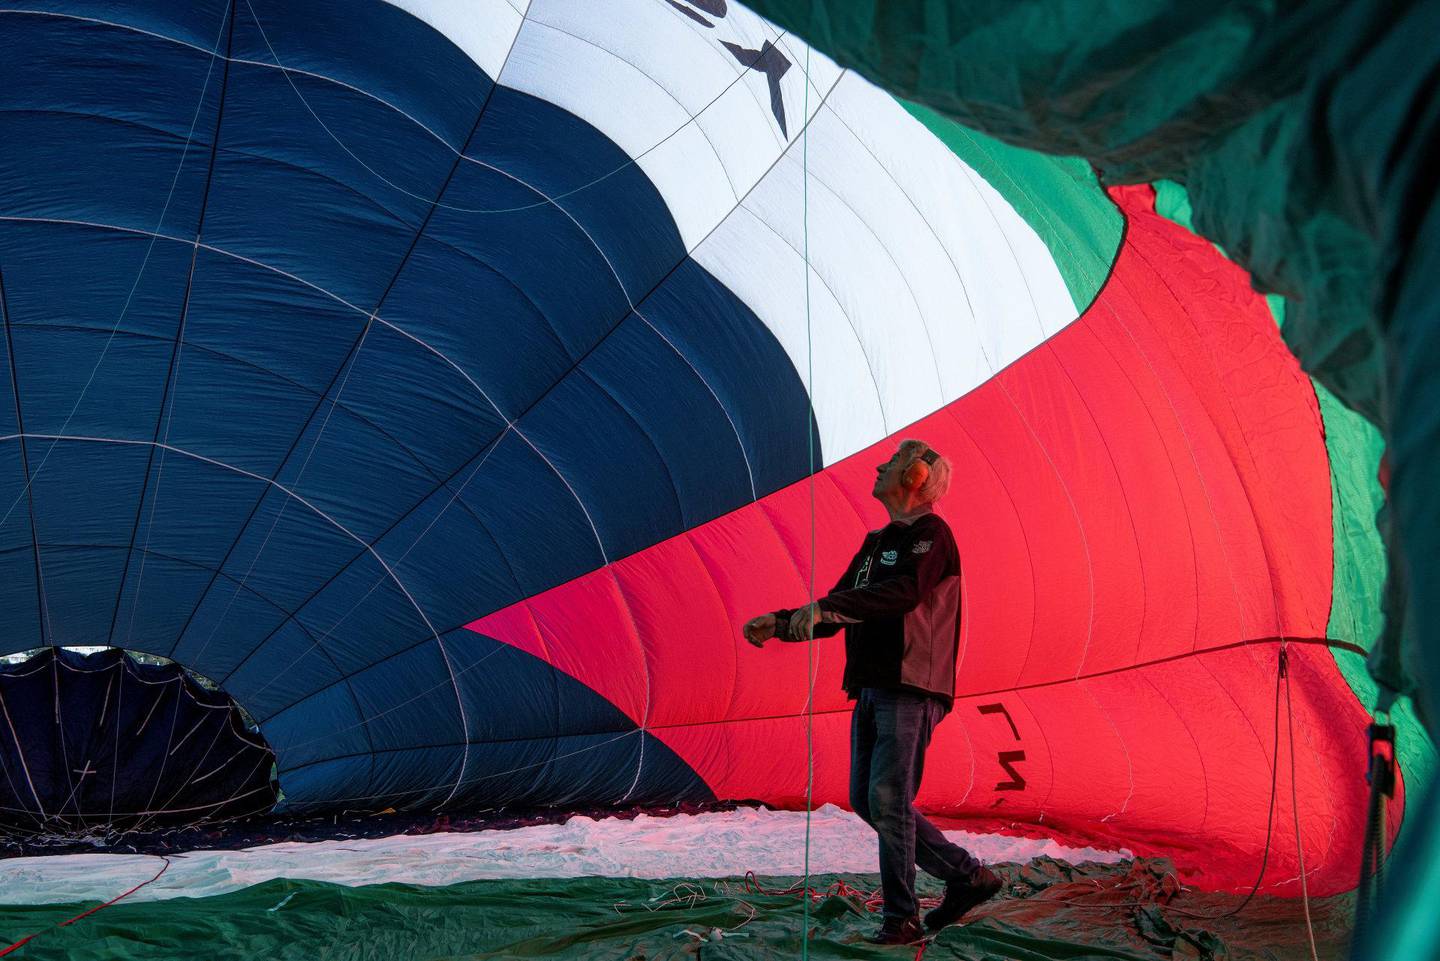 «Den palestinske ambassaden» inspiseres nøye før luftballongen fylles helt med varmluft. Pilot Mikael Klingberg overlater ingenting til tilfeldighetene.